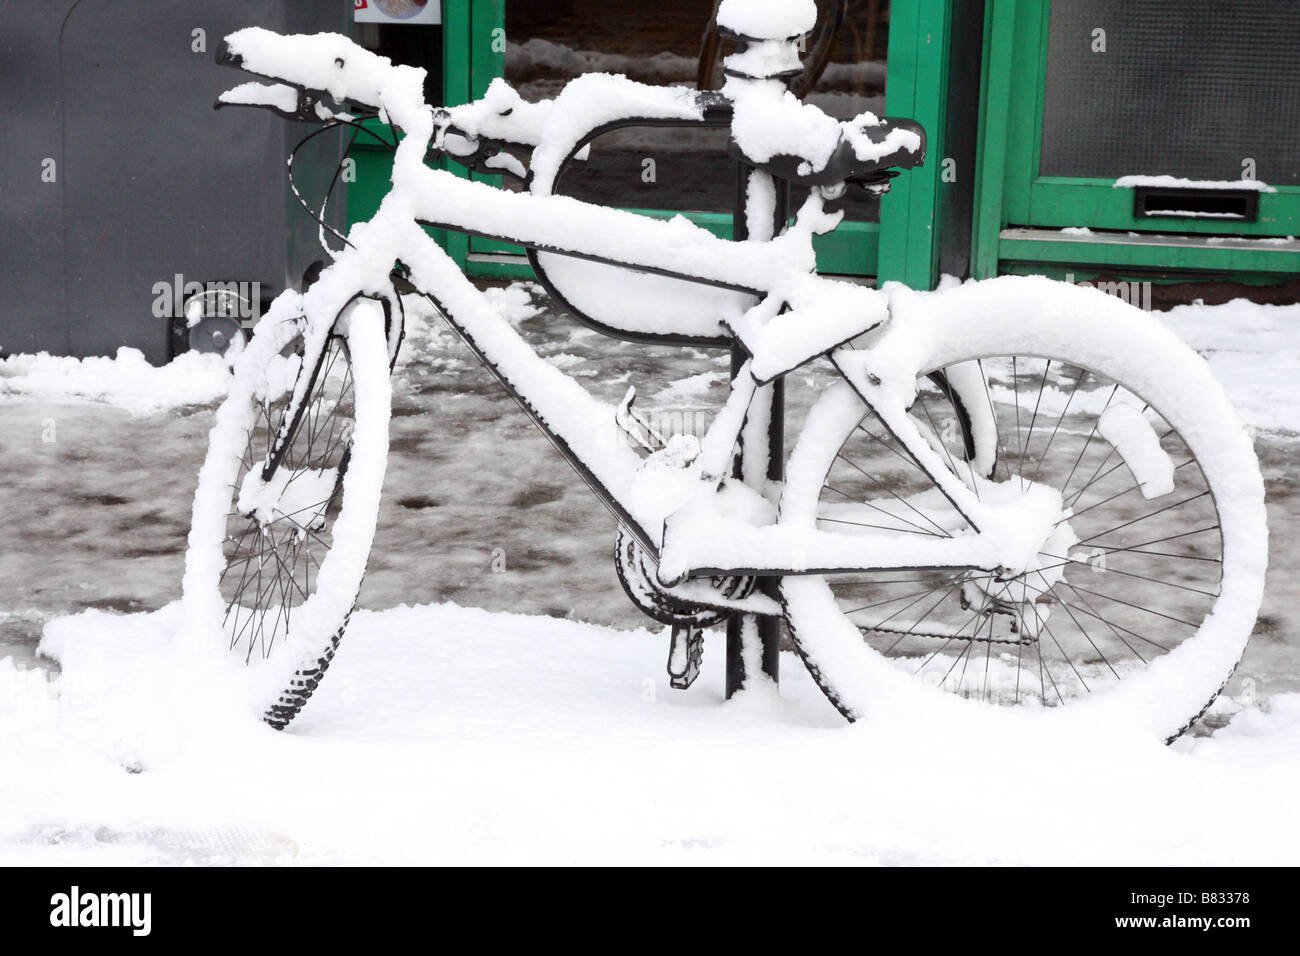 Dekorativ in einer frischen Schneeschicht bedeckt geparkte Fahrräder Stockfoto